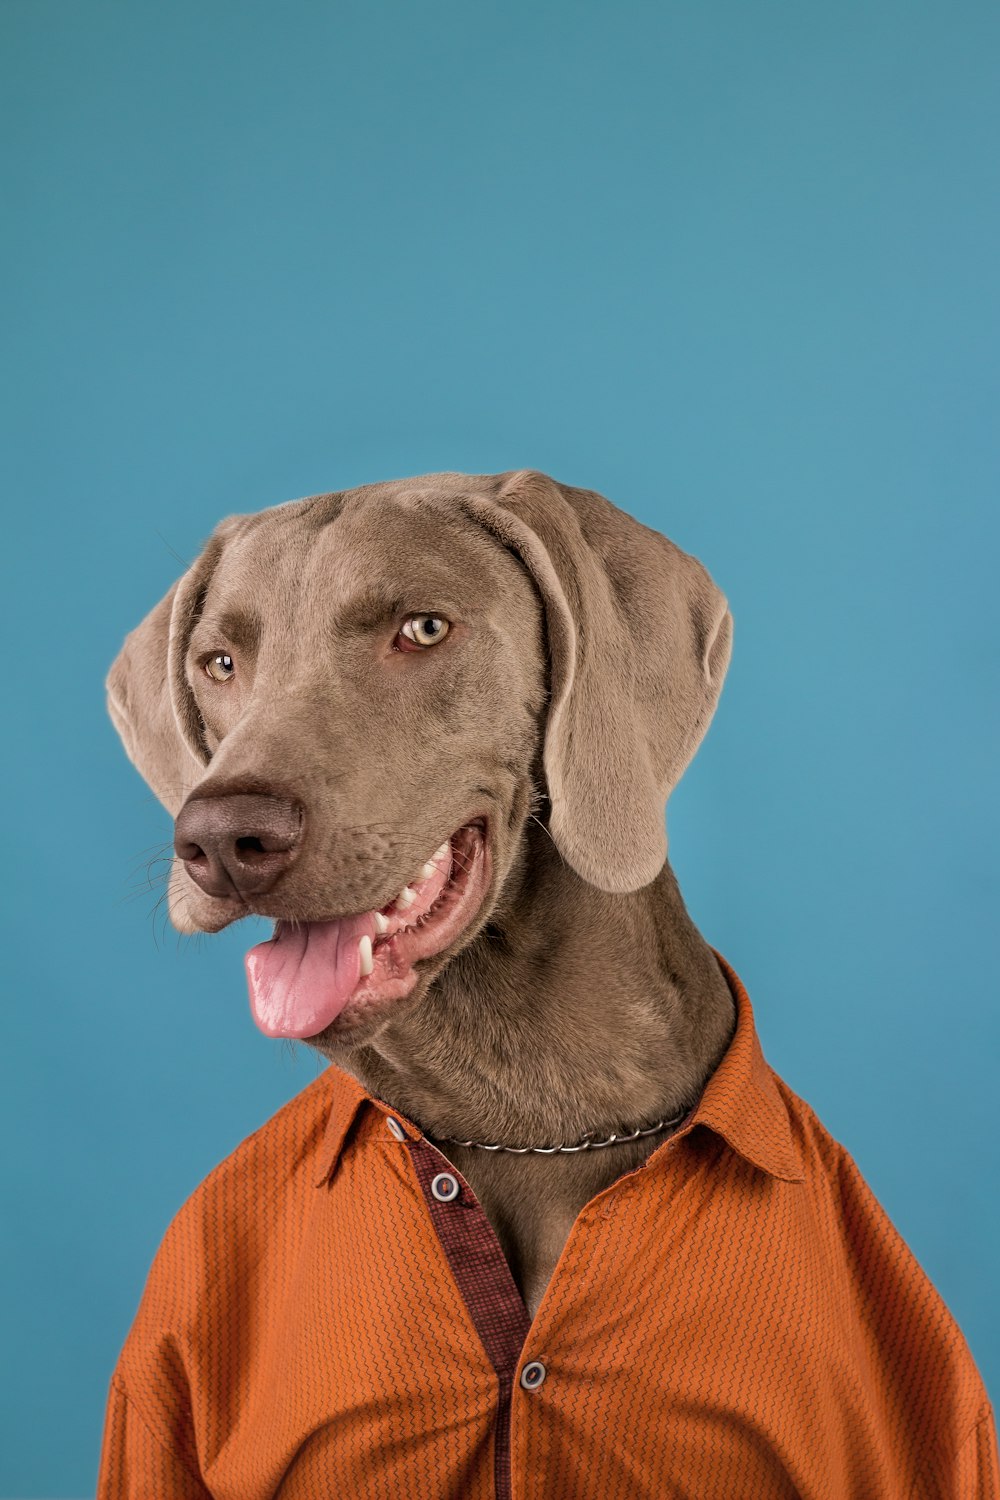 a dog wearing an orange shirt and a collar